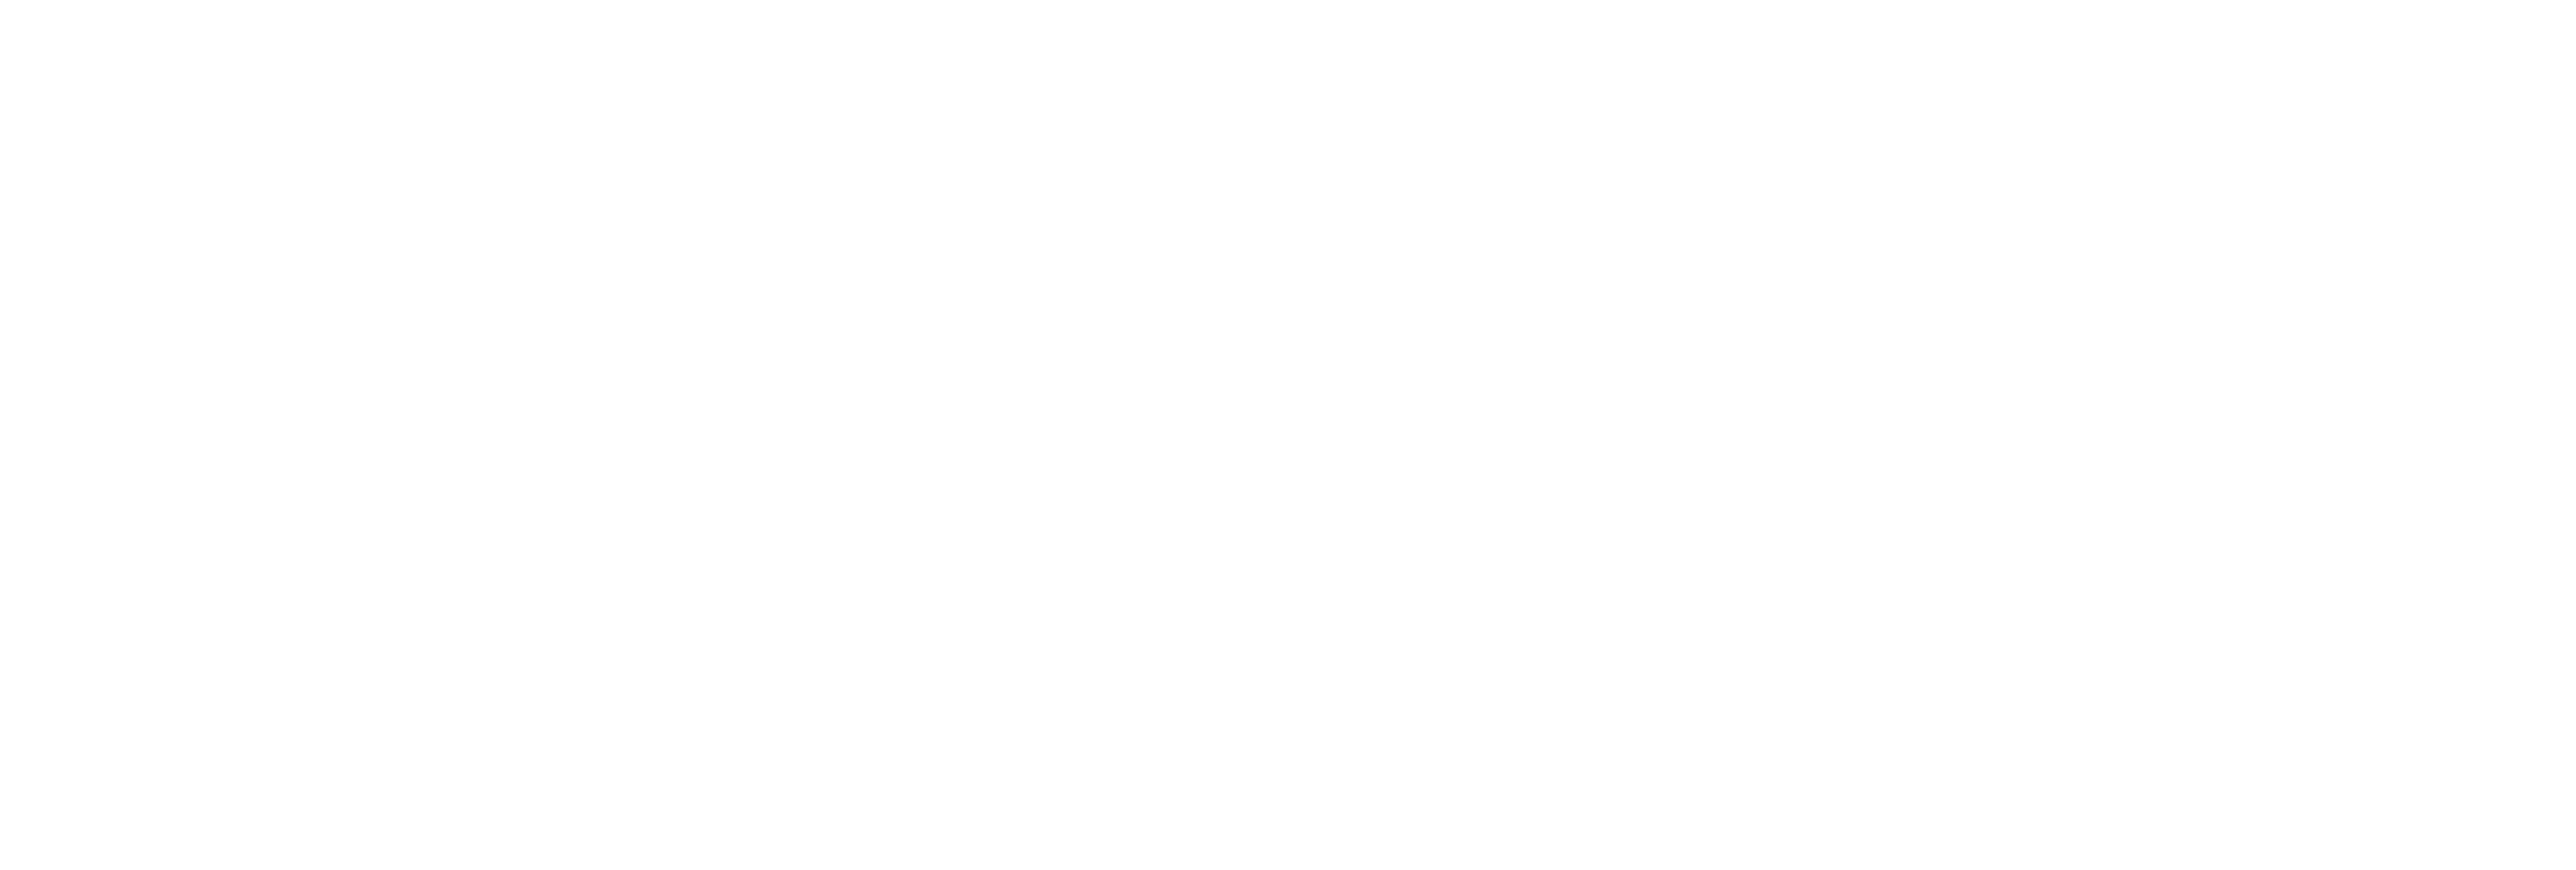 Clinica Veterinaria Nord Milano - Paderno Dugnano logo